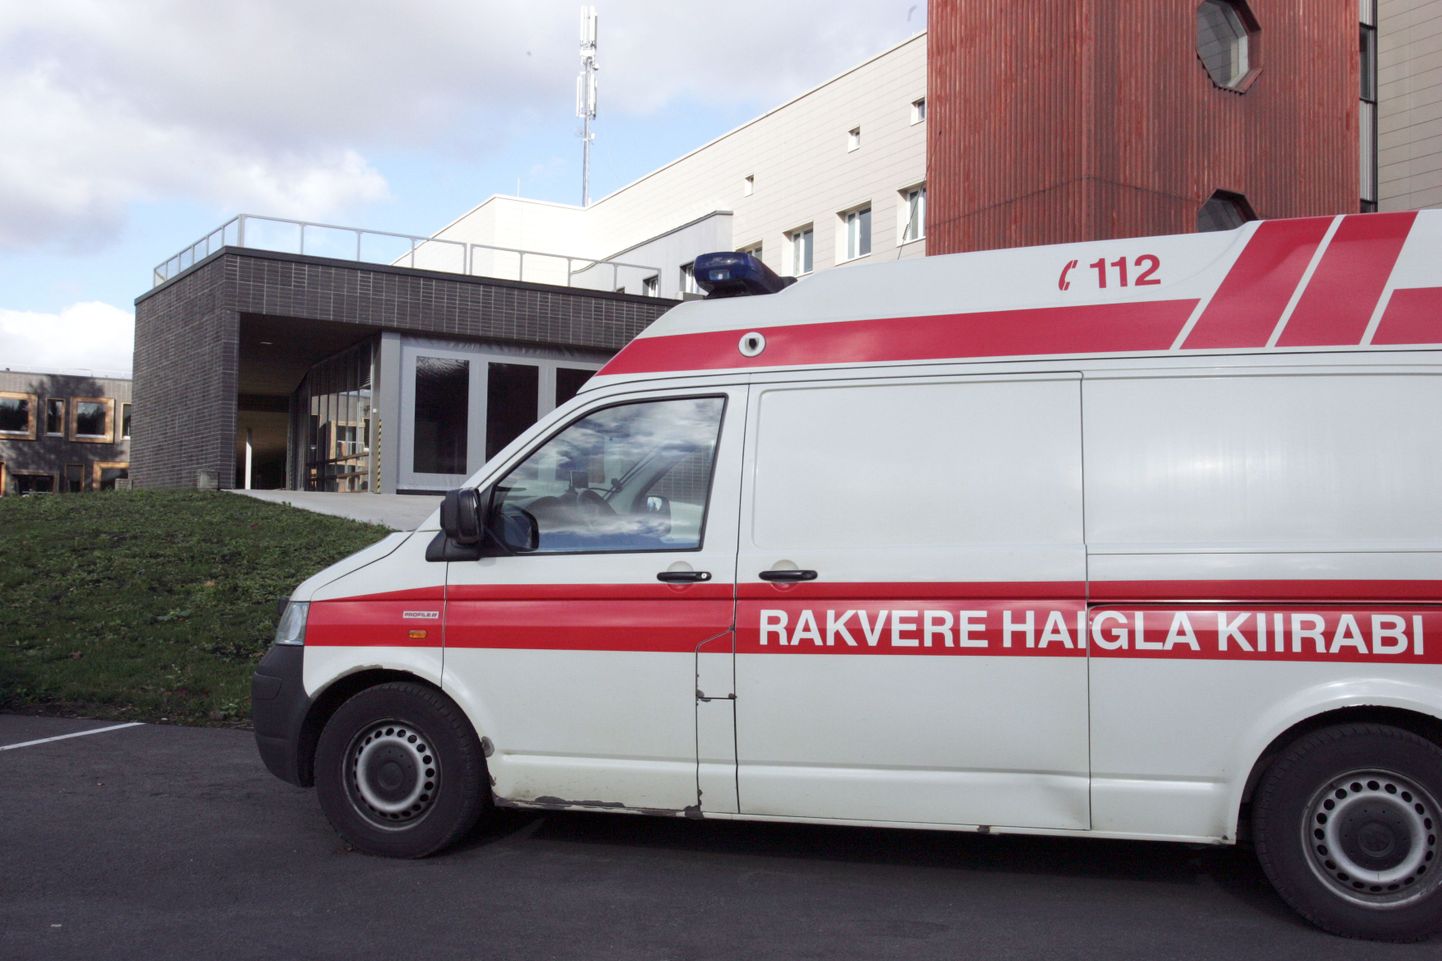 Автомобиль скорой помощи Раквереской больницы